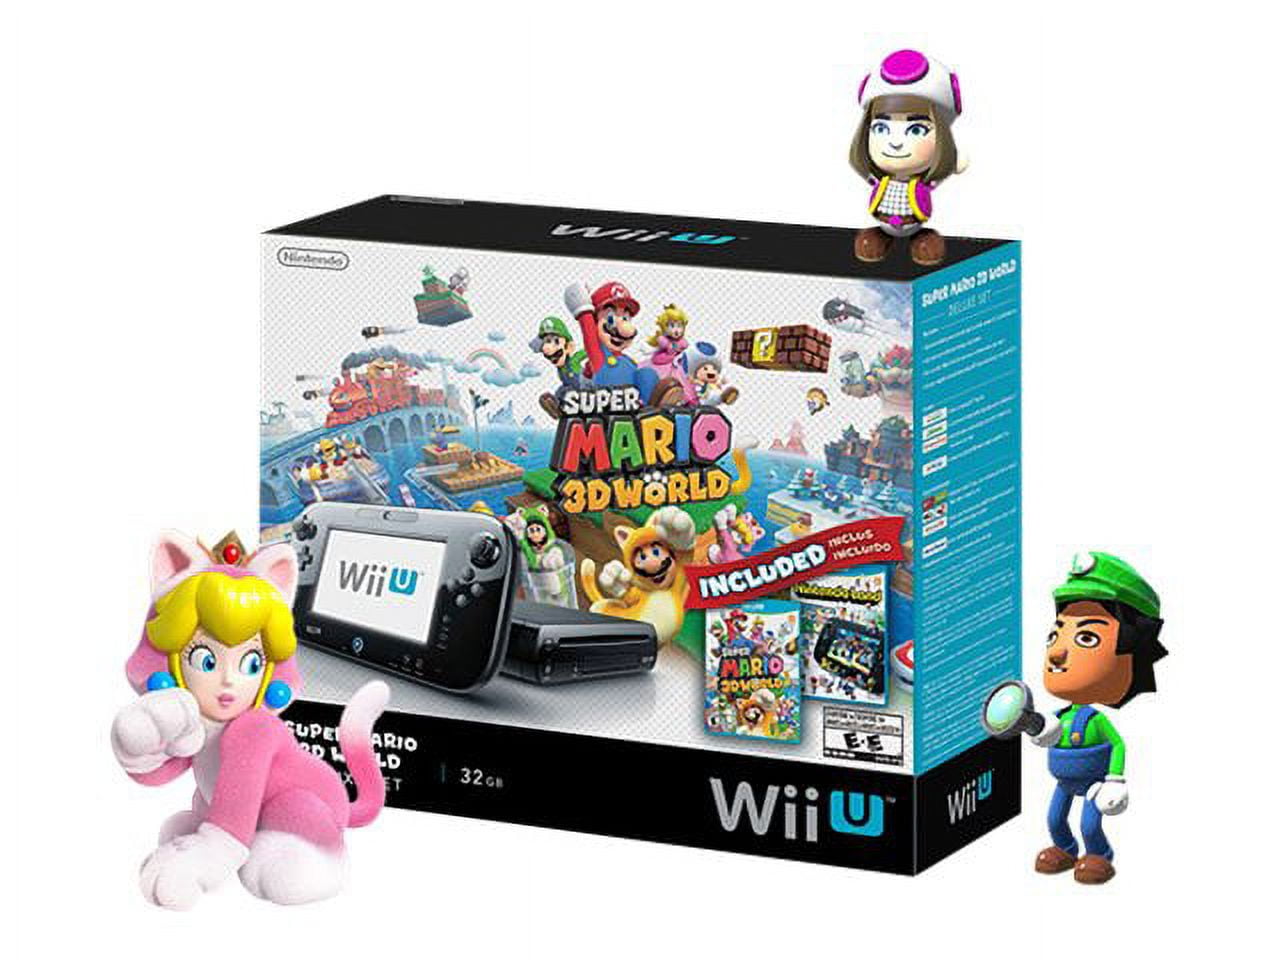 Nintendo Land (Nintendo Selects) - Nintendo Wii-U - Macy's